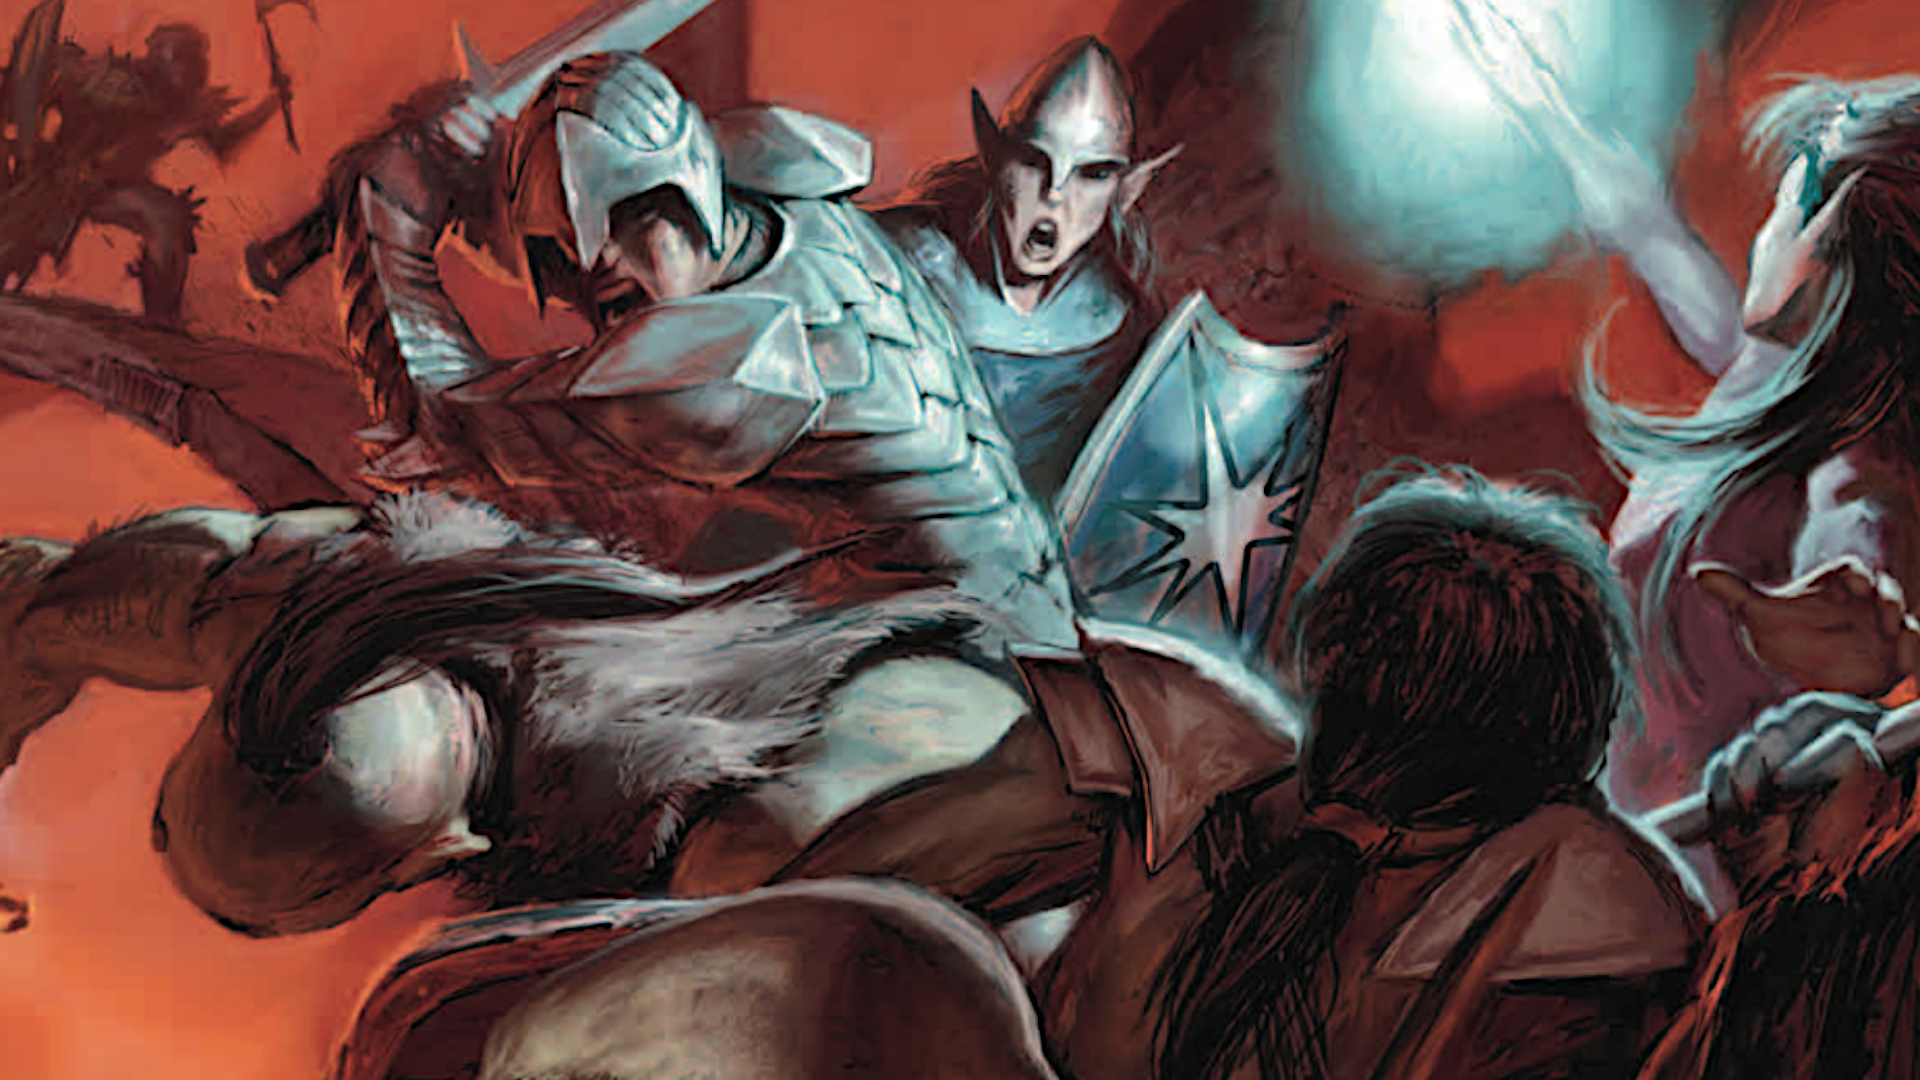 Abenteurer aus der 4. Edition von D&D kämpfen mit einem Schwarm Orks, schleudern Zaubersprüche und schwingen Schwerter in einem hektischen Nahkampf.